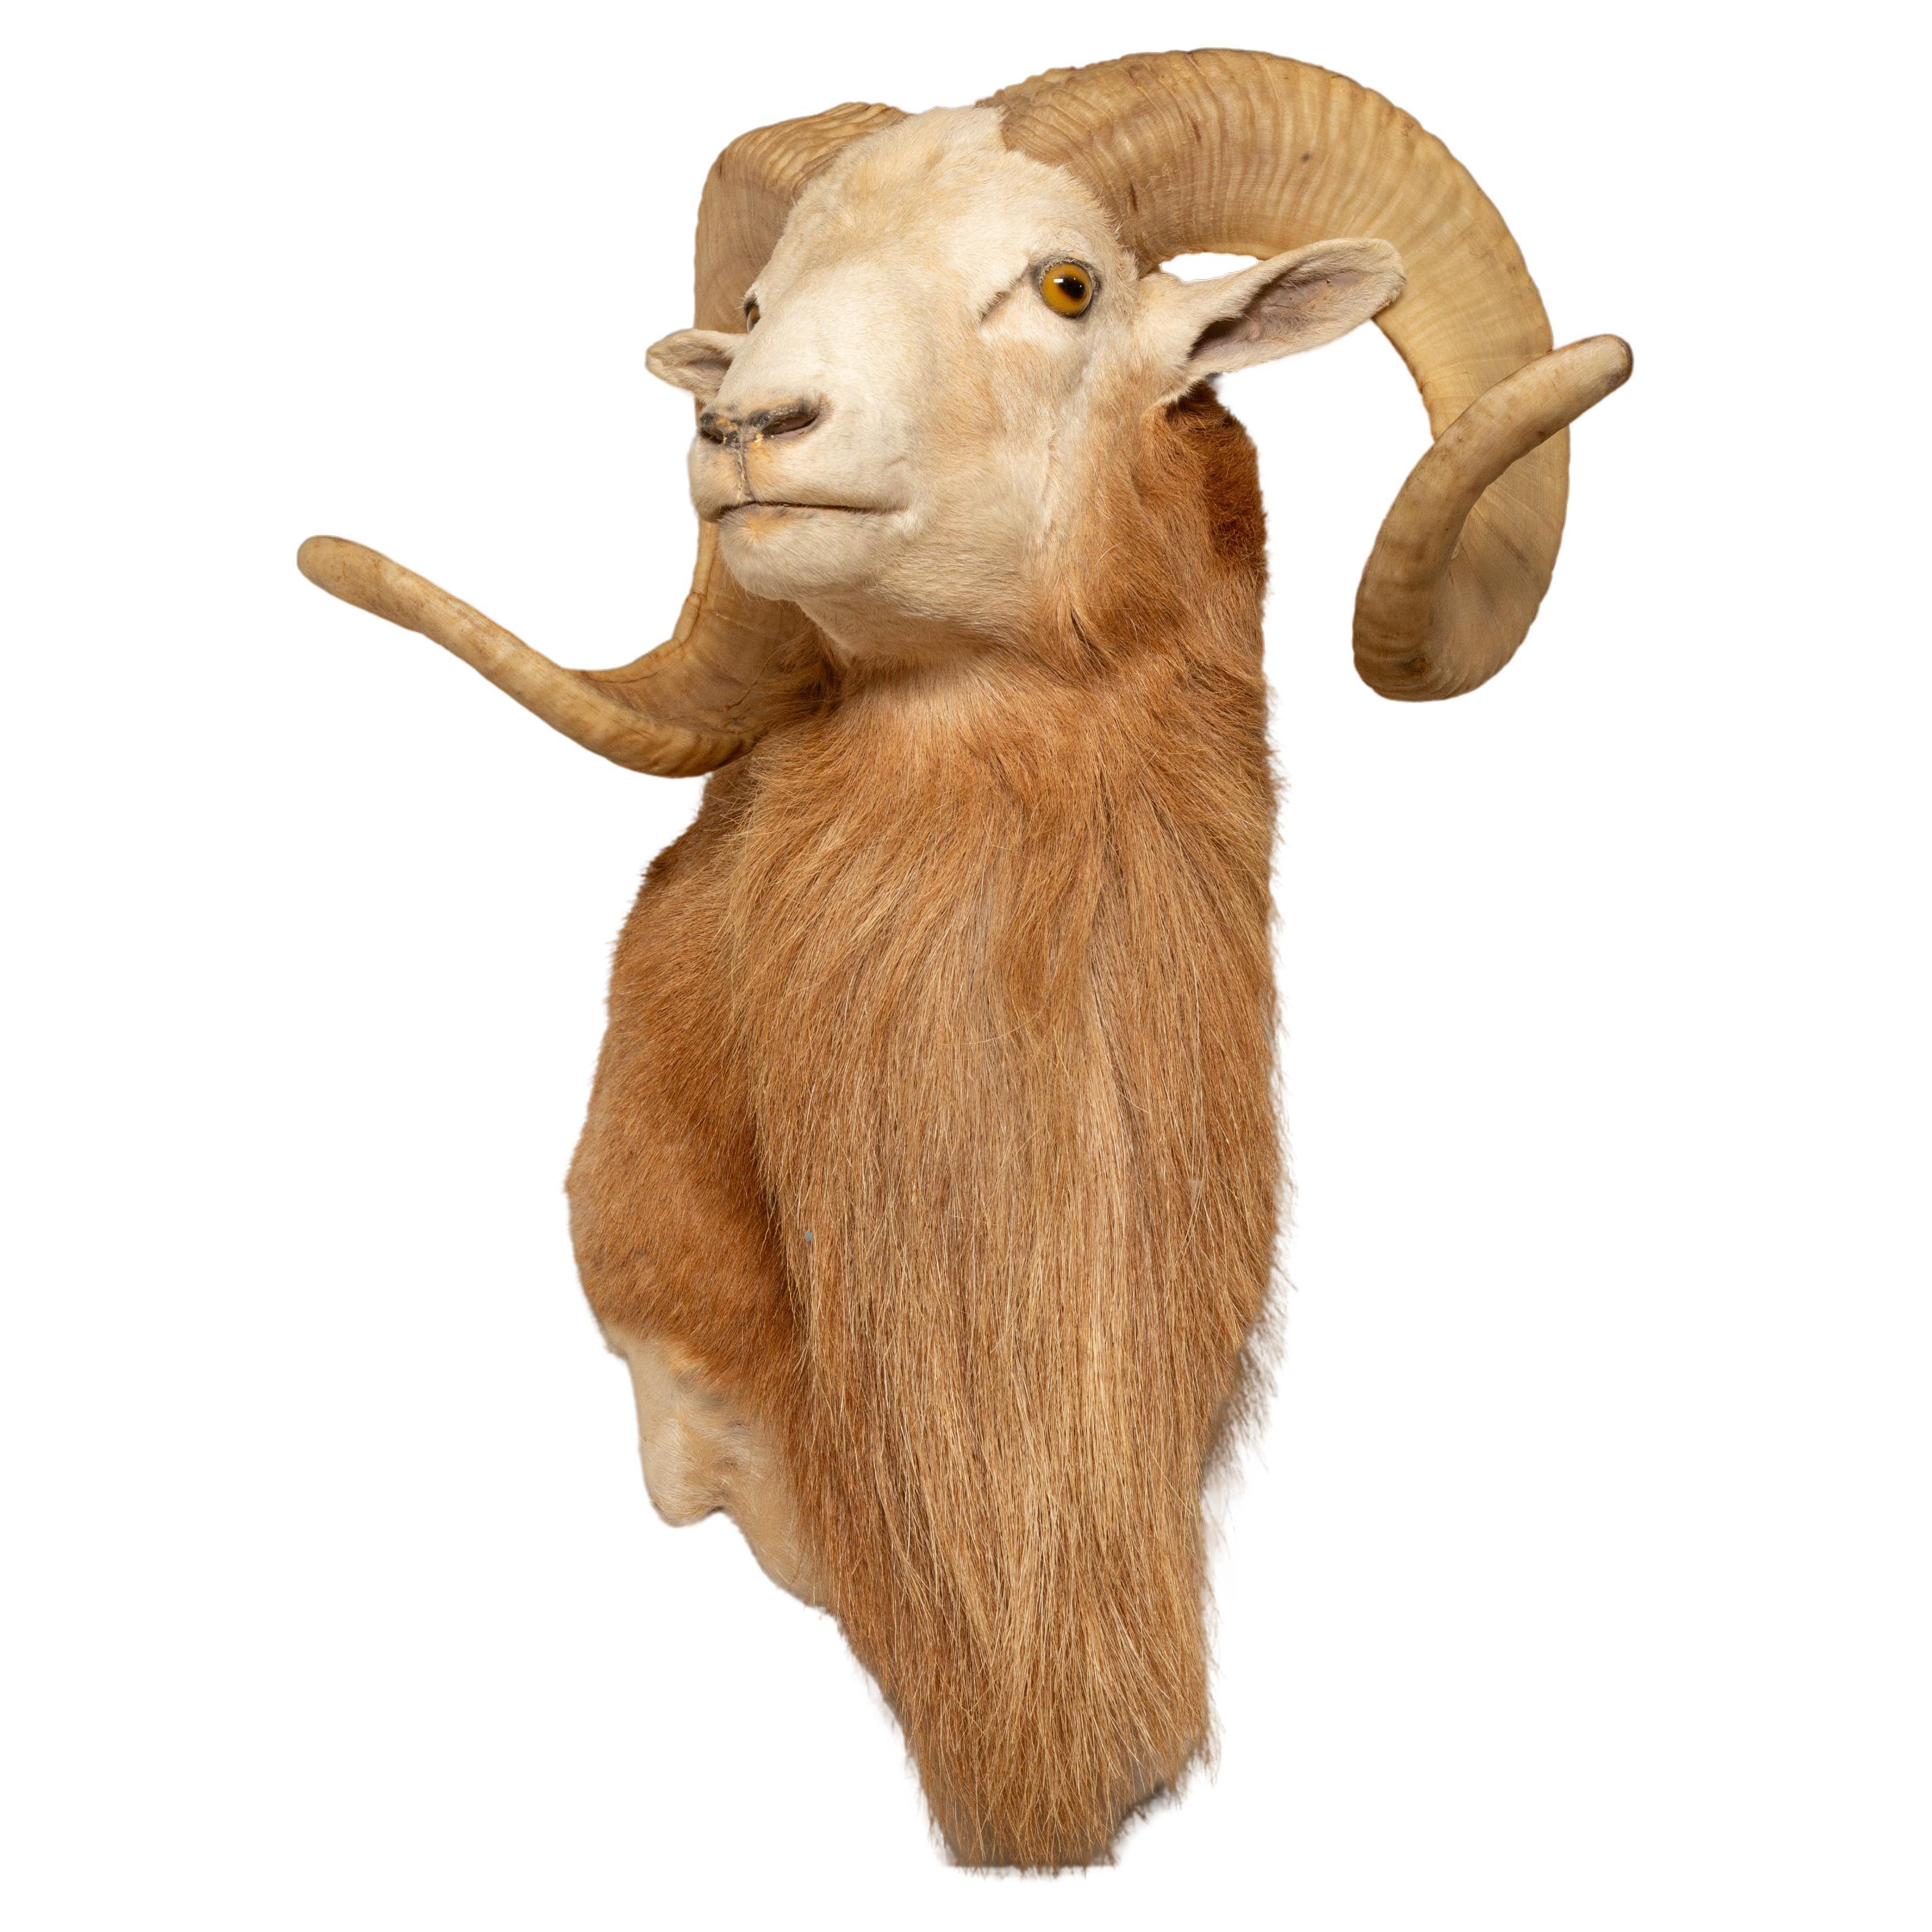 Das texanische Dall-Schaf wird gefeiert: Eine majestätische Wildtierart Nordamerikas im Angebot